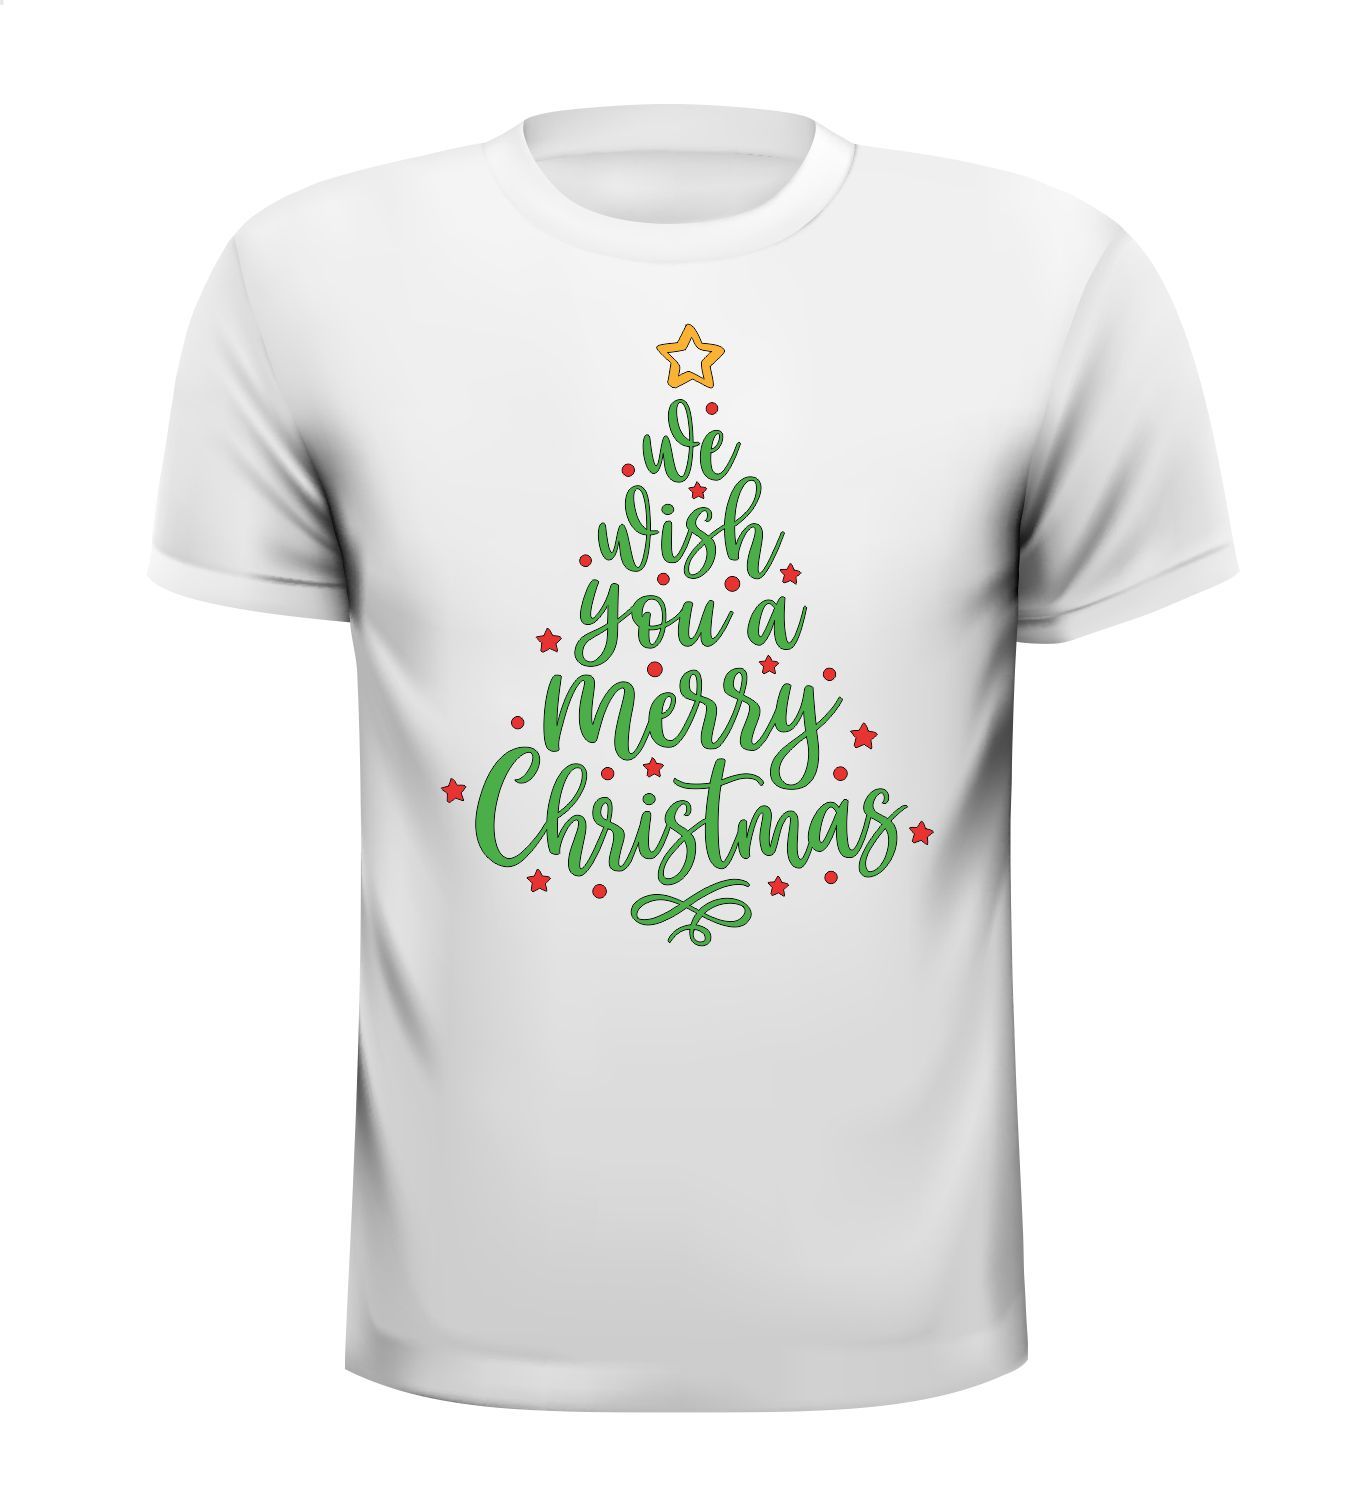 Wit kerst T-shirt we wish you a merry Christmas in de vorm van een kerstboom